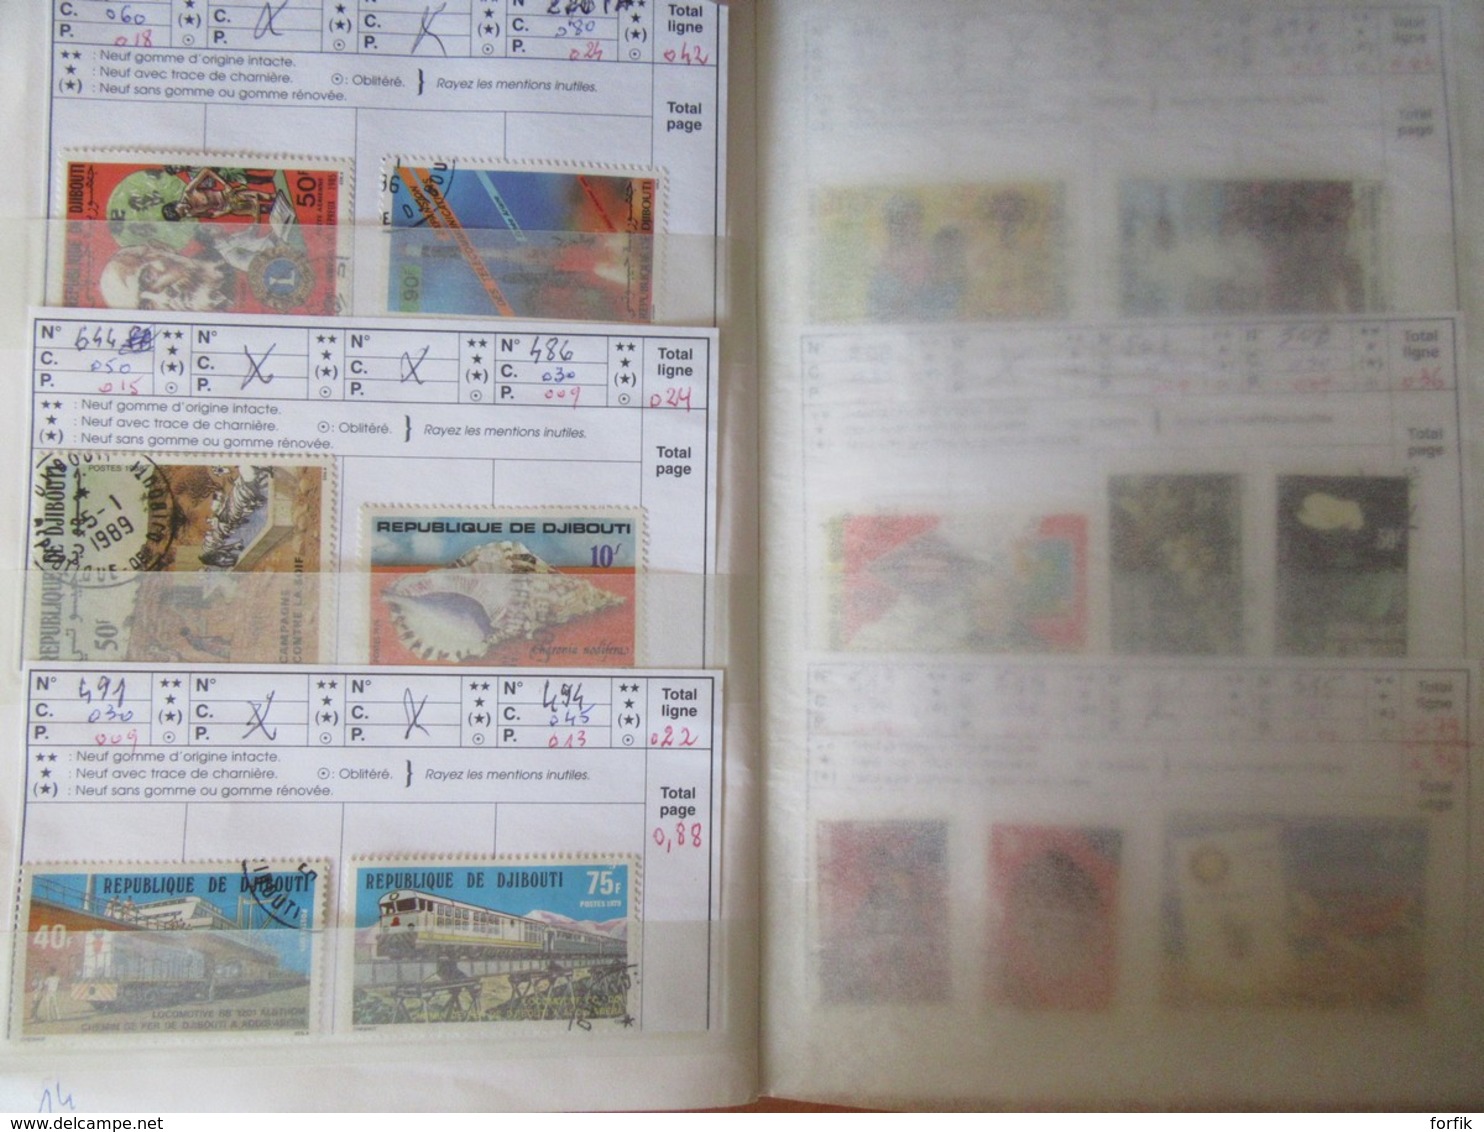 Achat immédiat - Carnet de timbres Ex-Colonies françaises dont Algérie, Cameroun, etc... - Oblitérés + qqles neufs